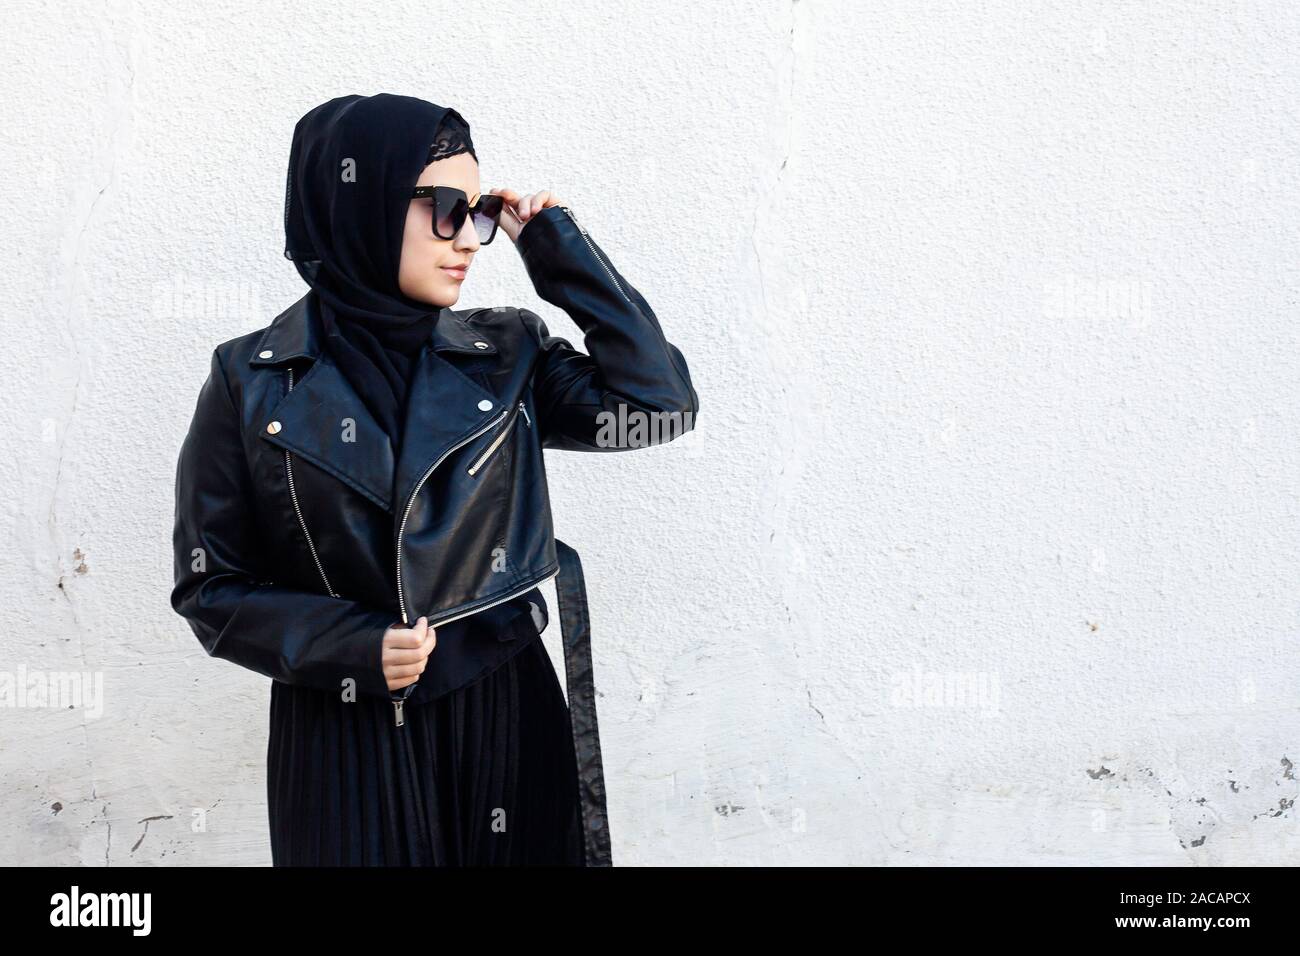 Portrait de belle-fille de l'est moyen dans les vêtements islamiques - hijab.  Jeune femme iranienne moderne dans des lunettes de soleil et une veste en  cuir. Attr Photo Stock - Alamy